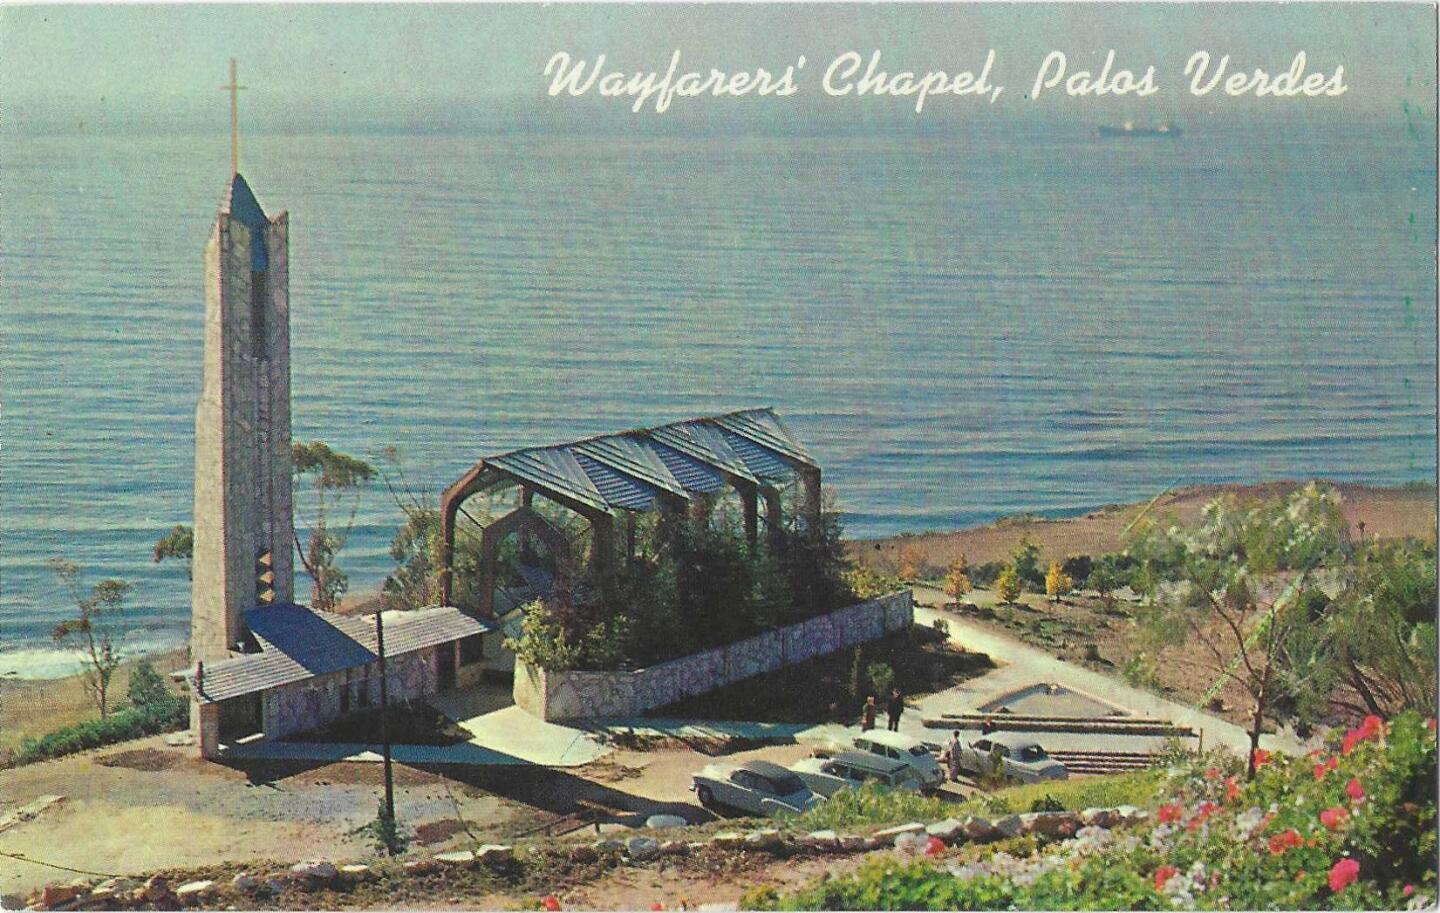 Wayfarers' Chapel postcard